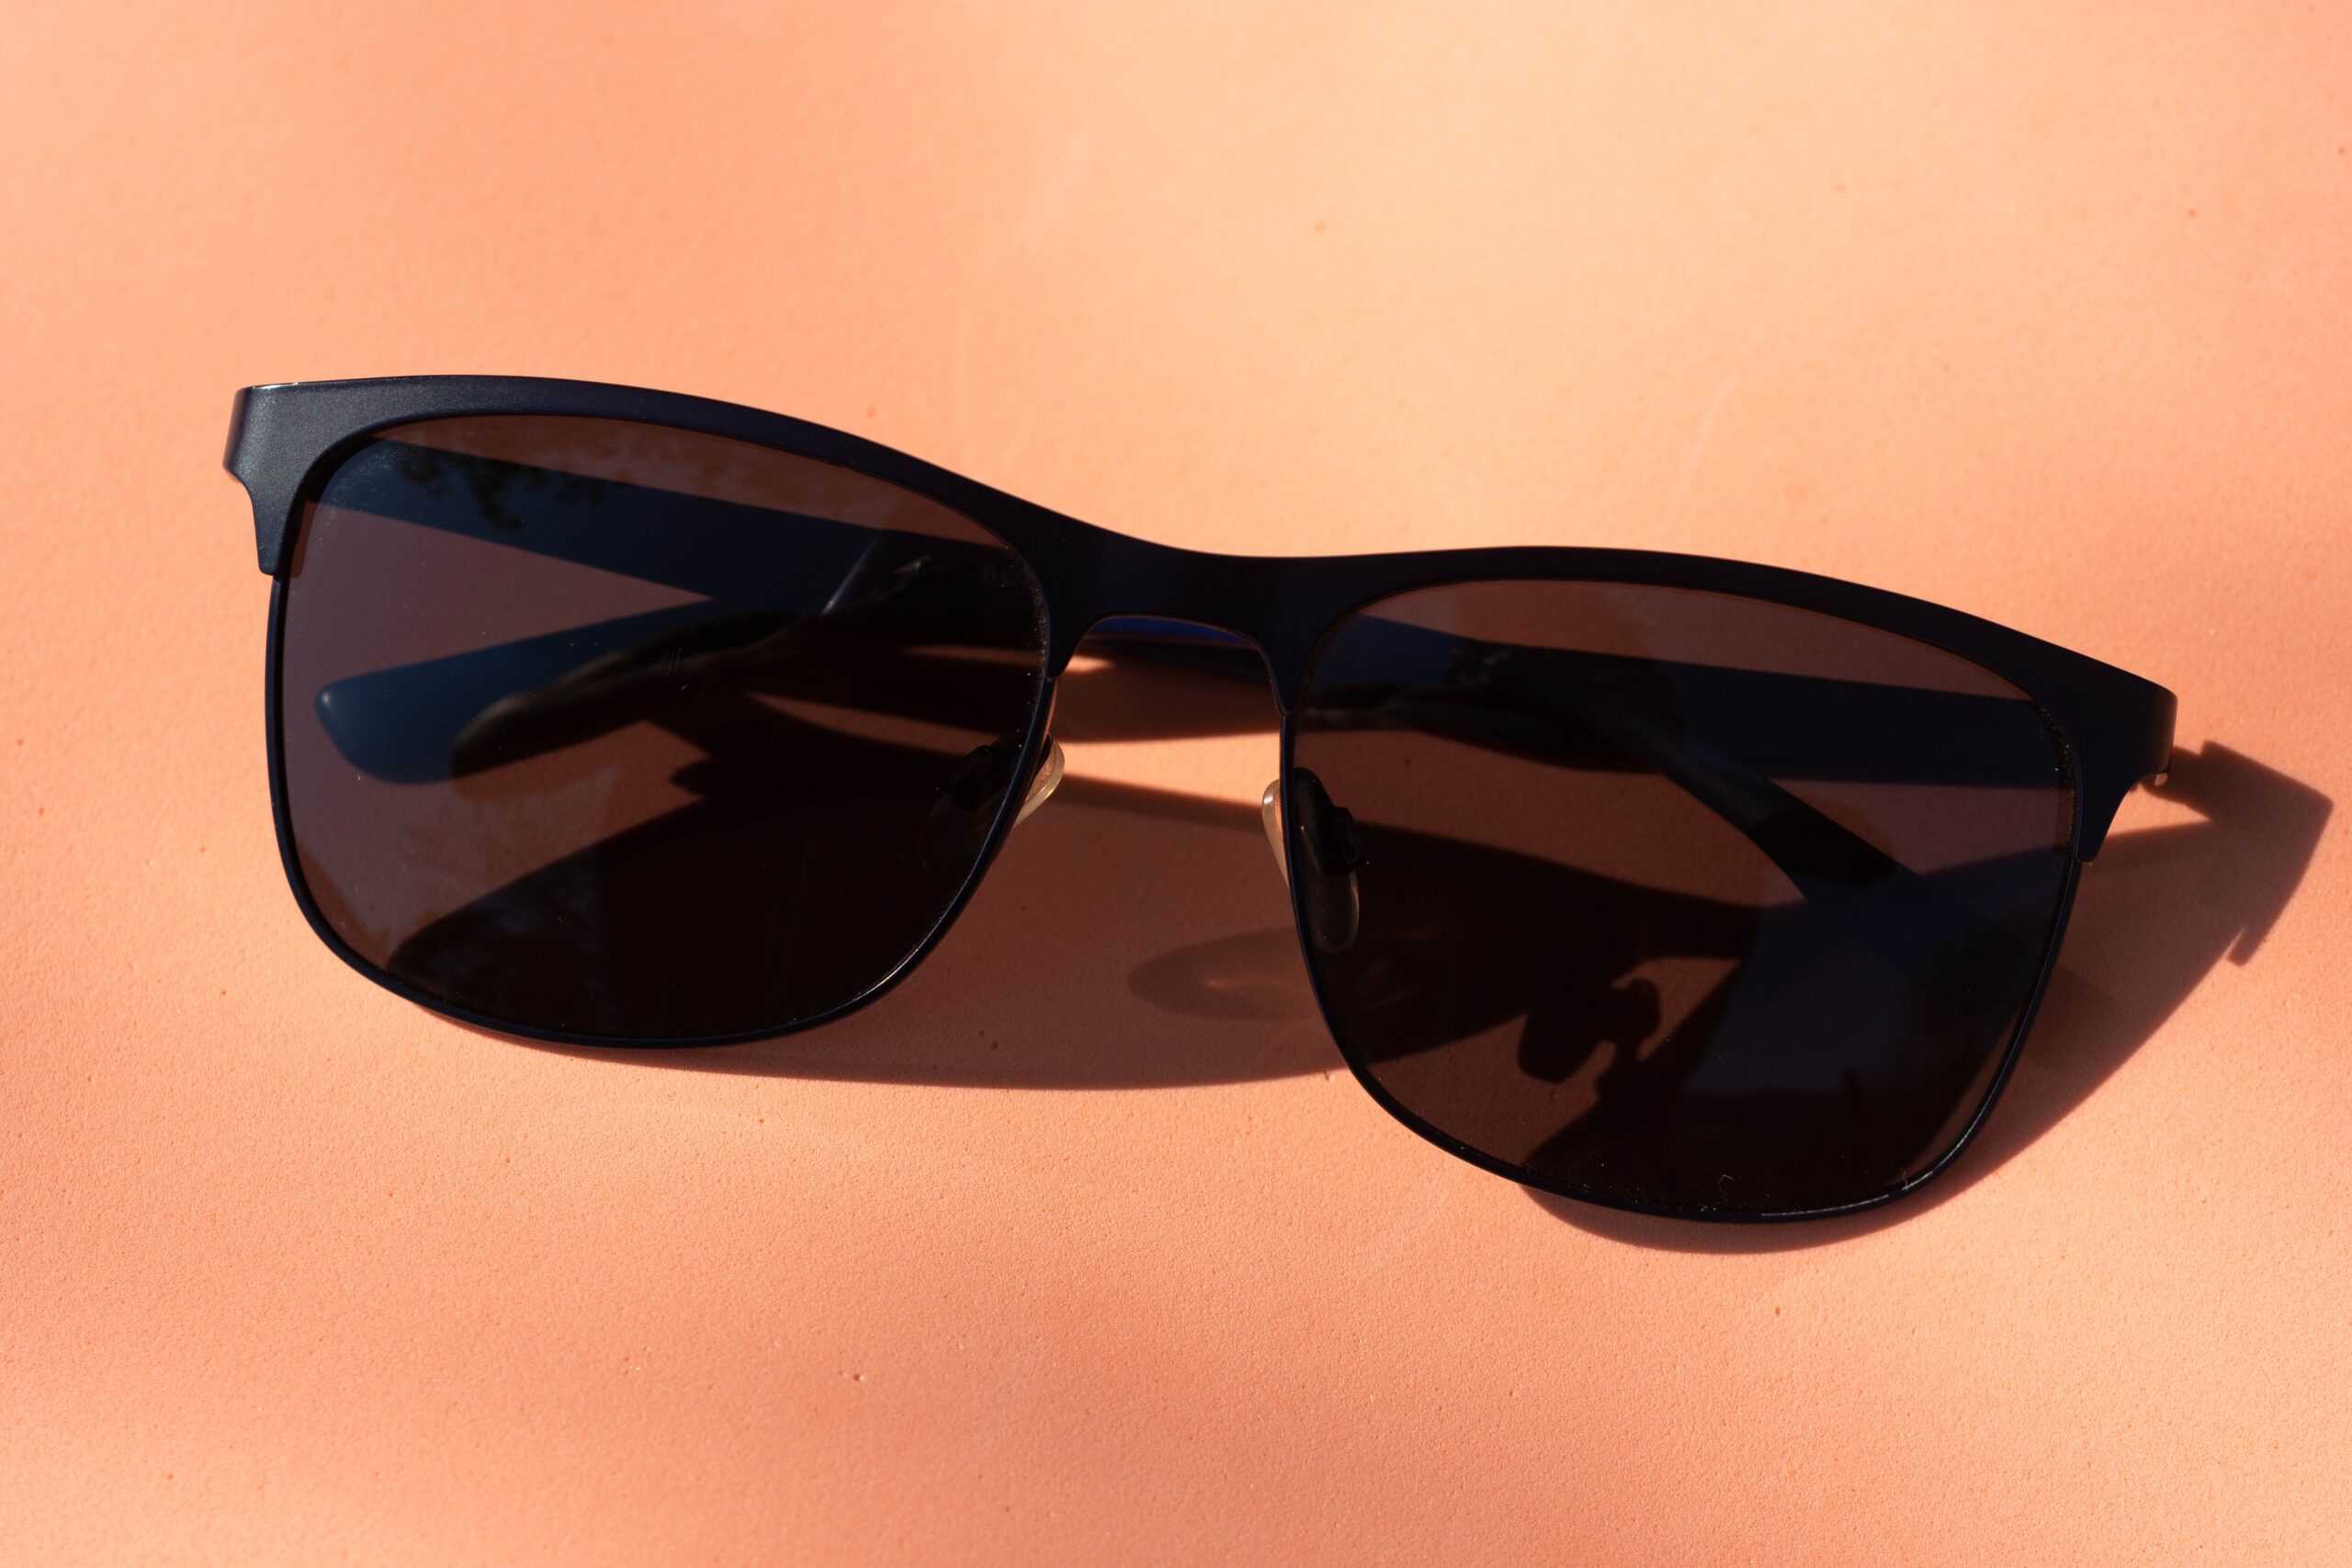 pair of black sunglasses.